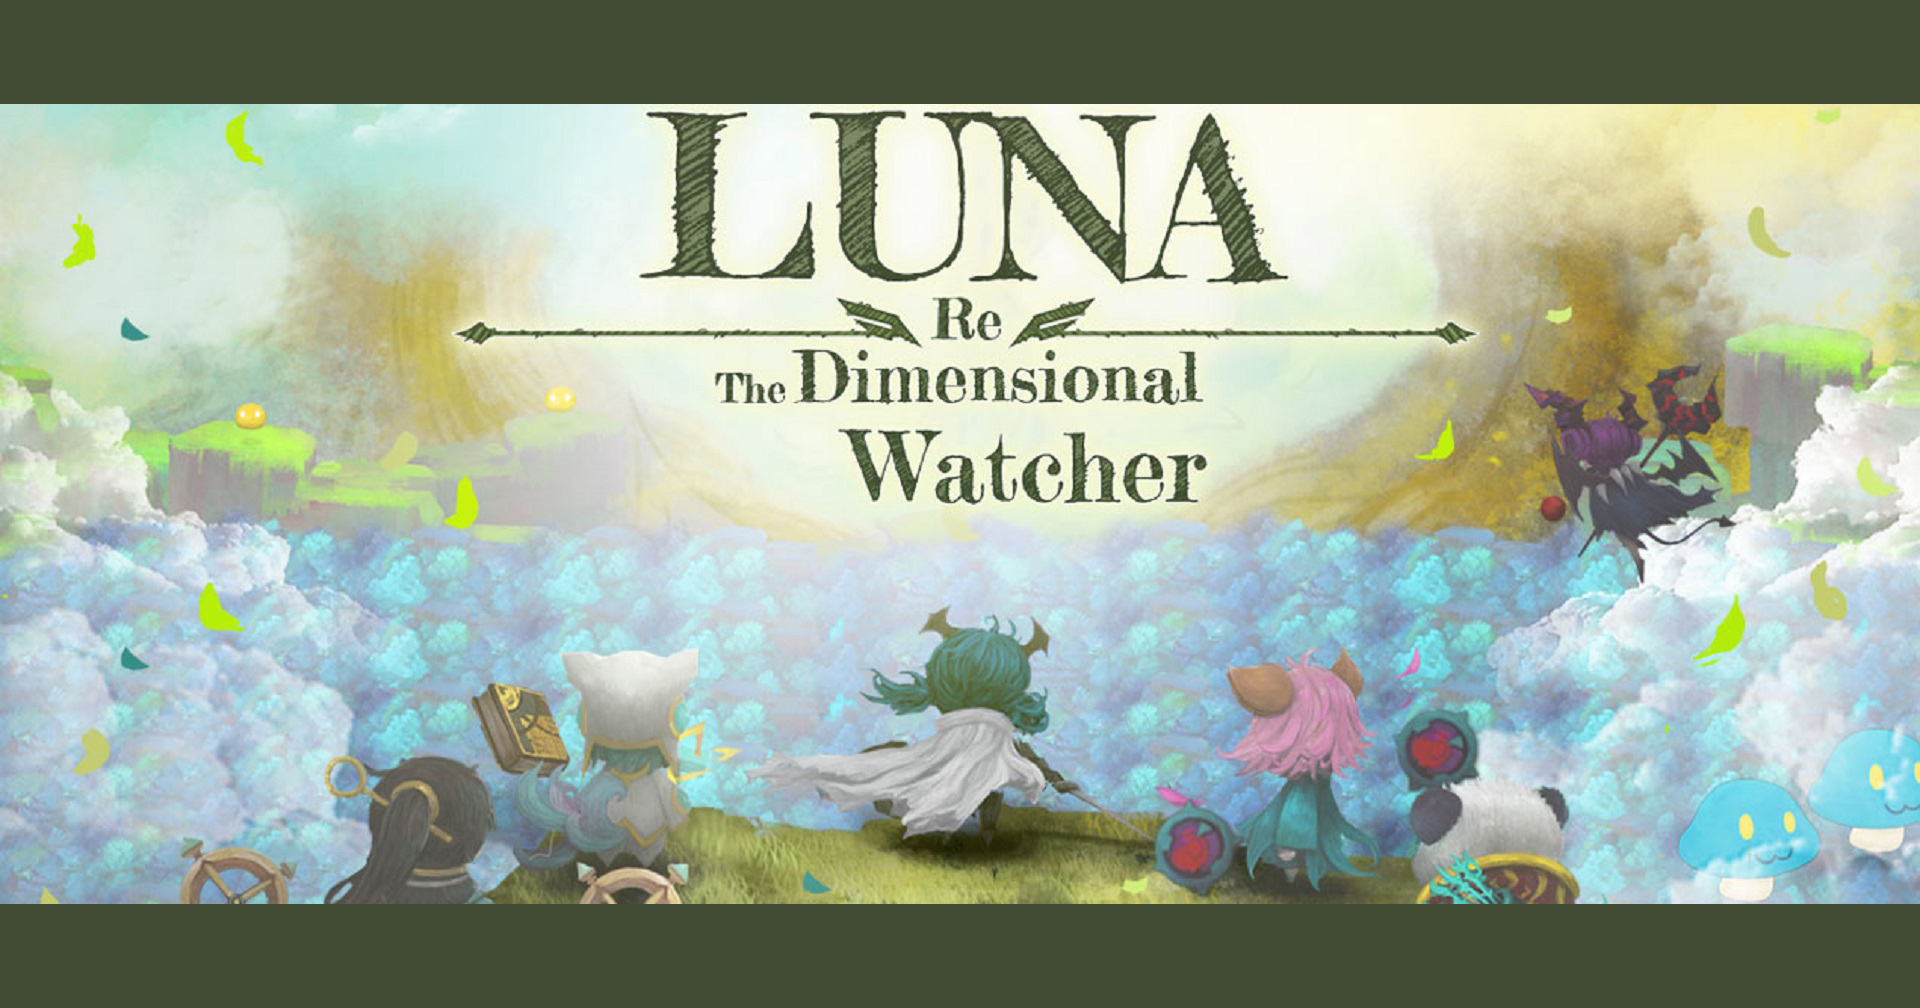 [รีวิวเกม] Luna Re : Dimensional Watcher เกม RPG ลุยฝูงมอนสเตอร์ไปกับเหล่าฮีโรตัวจิ๋ว